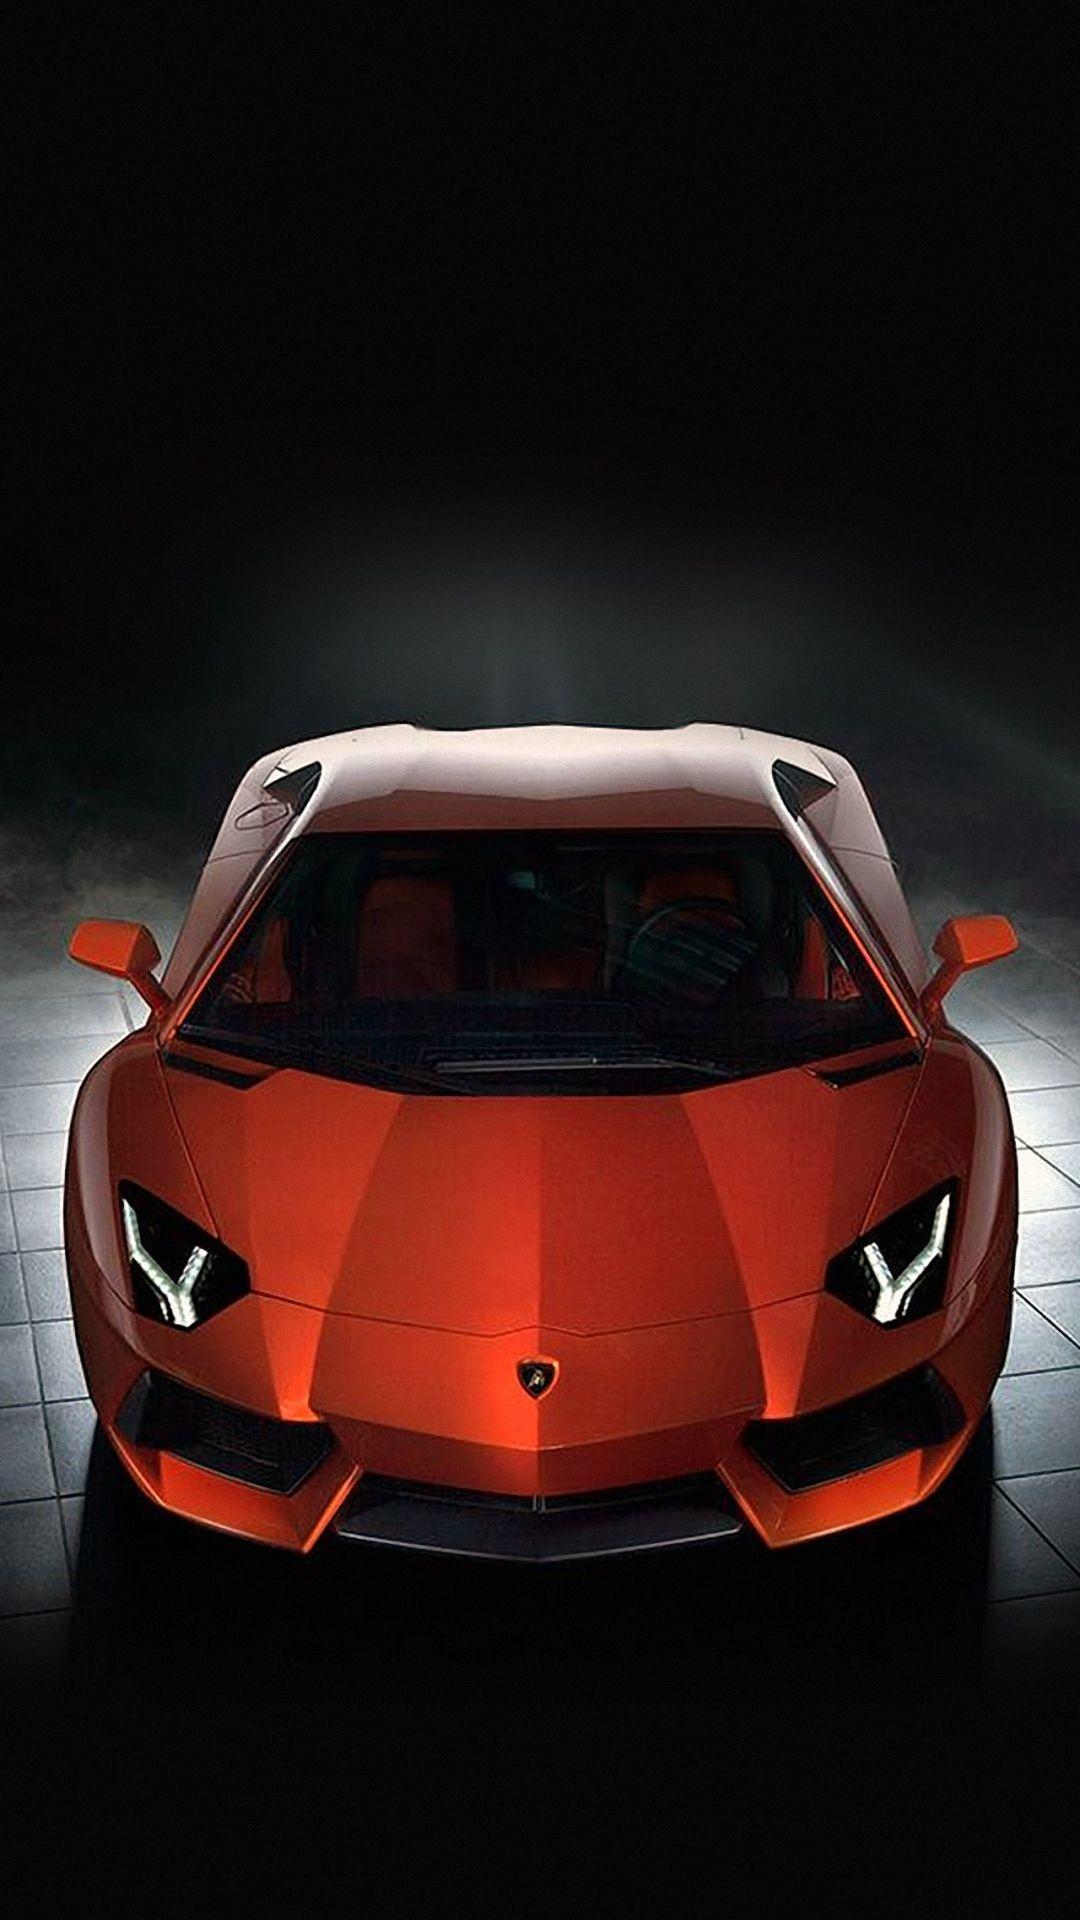 Lamborghini Car Android Wallpaper 1080p Phone Mobile Full HD